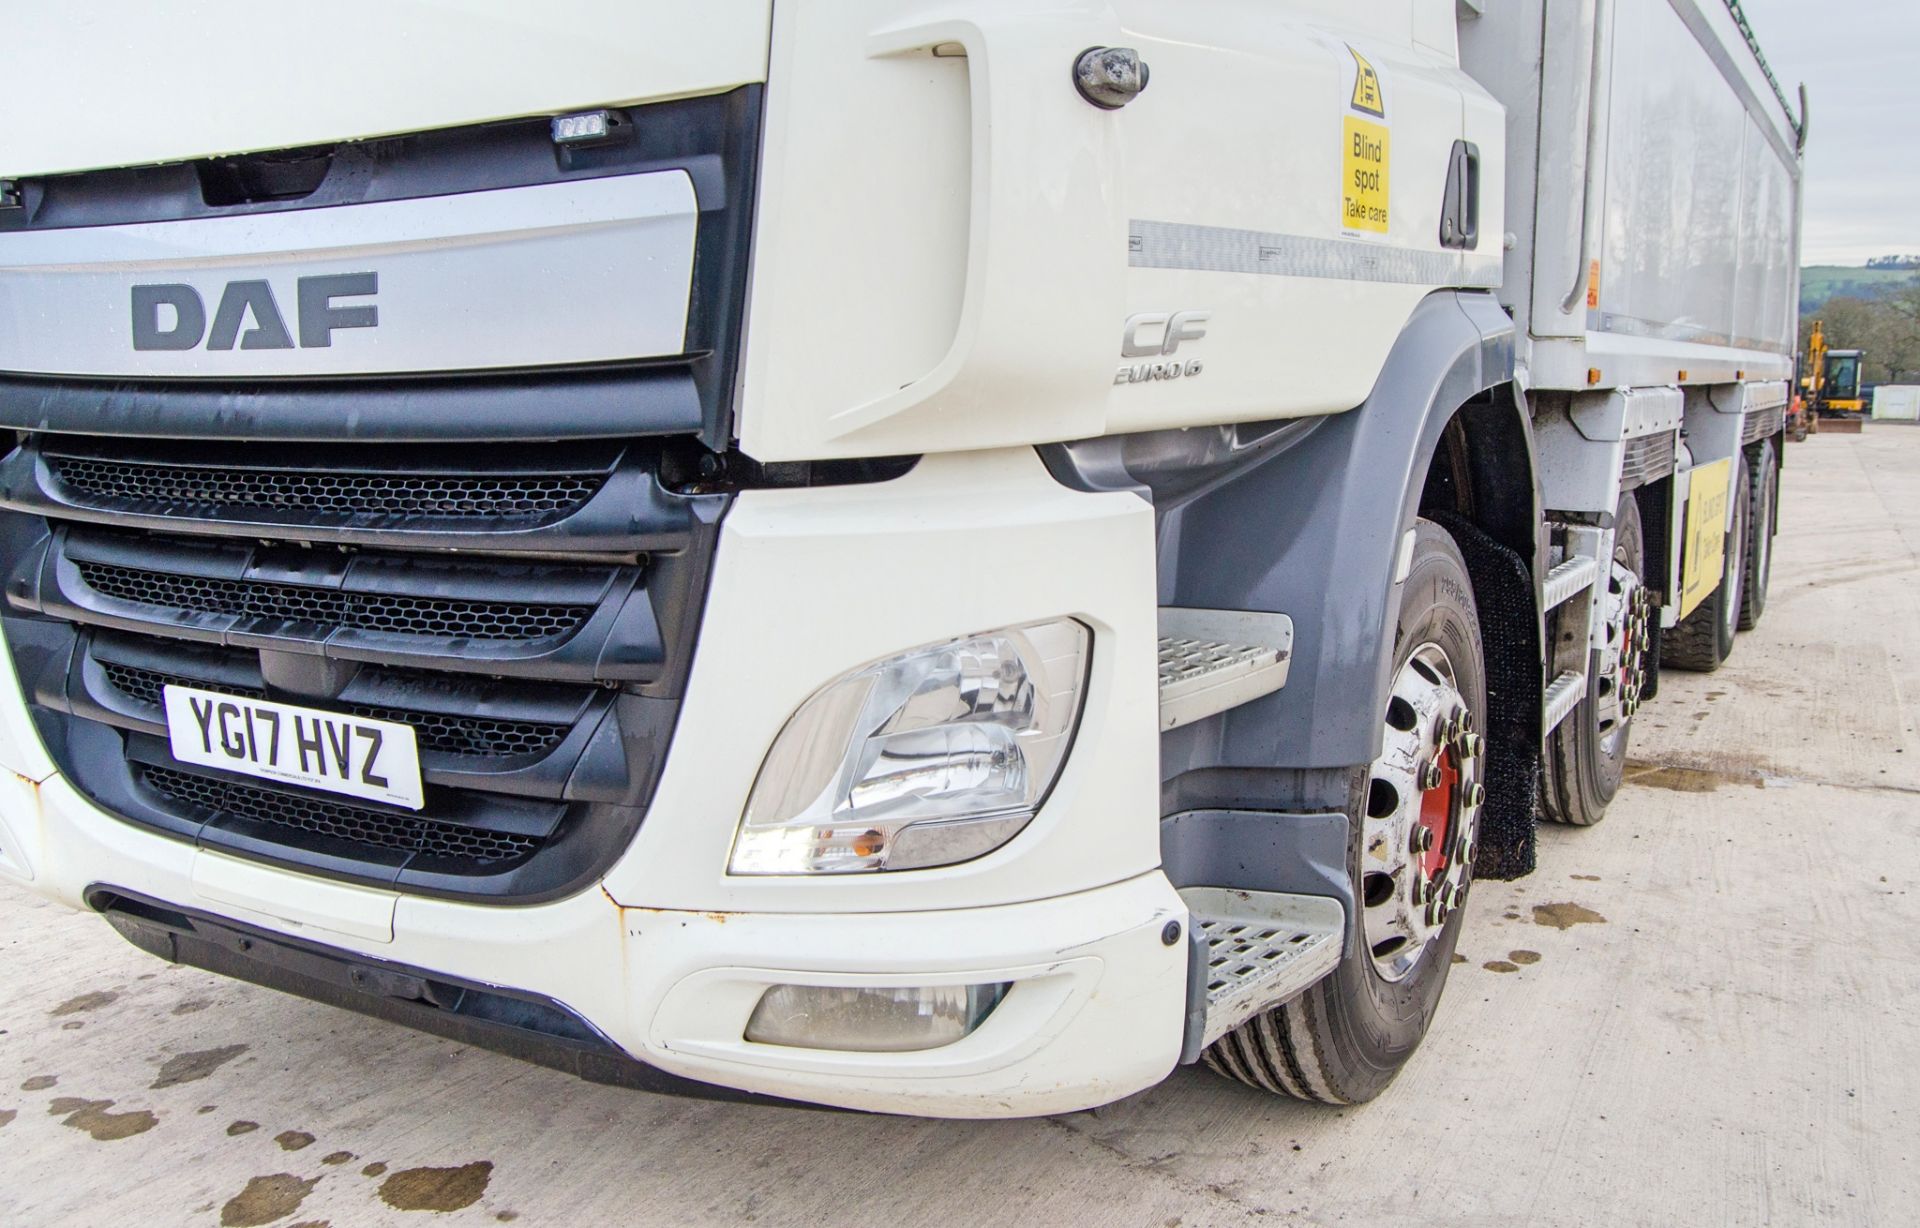 DAF 440 CF Euro 6 8x4 32 tonne tipper lorry Registration Number: YG17 HVZ Date of Registration: 10/ - Image 10 of 33